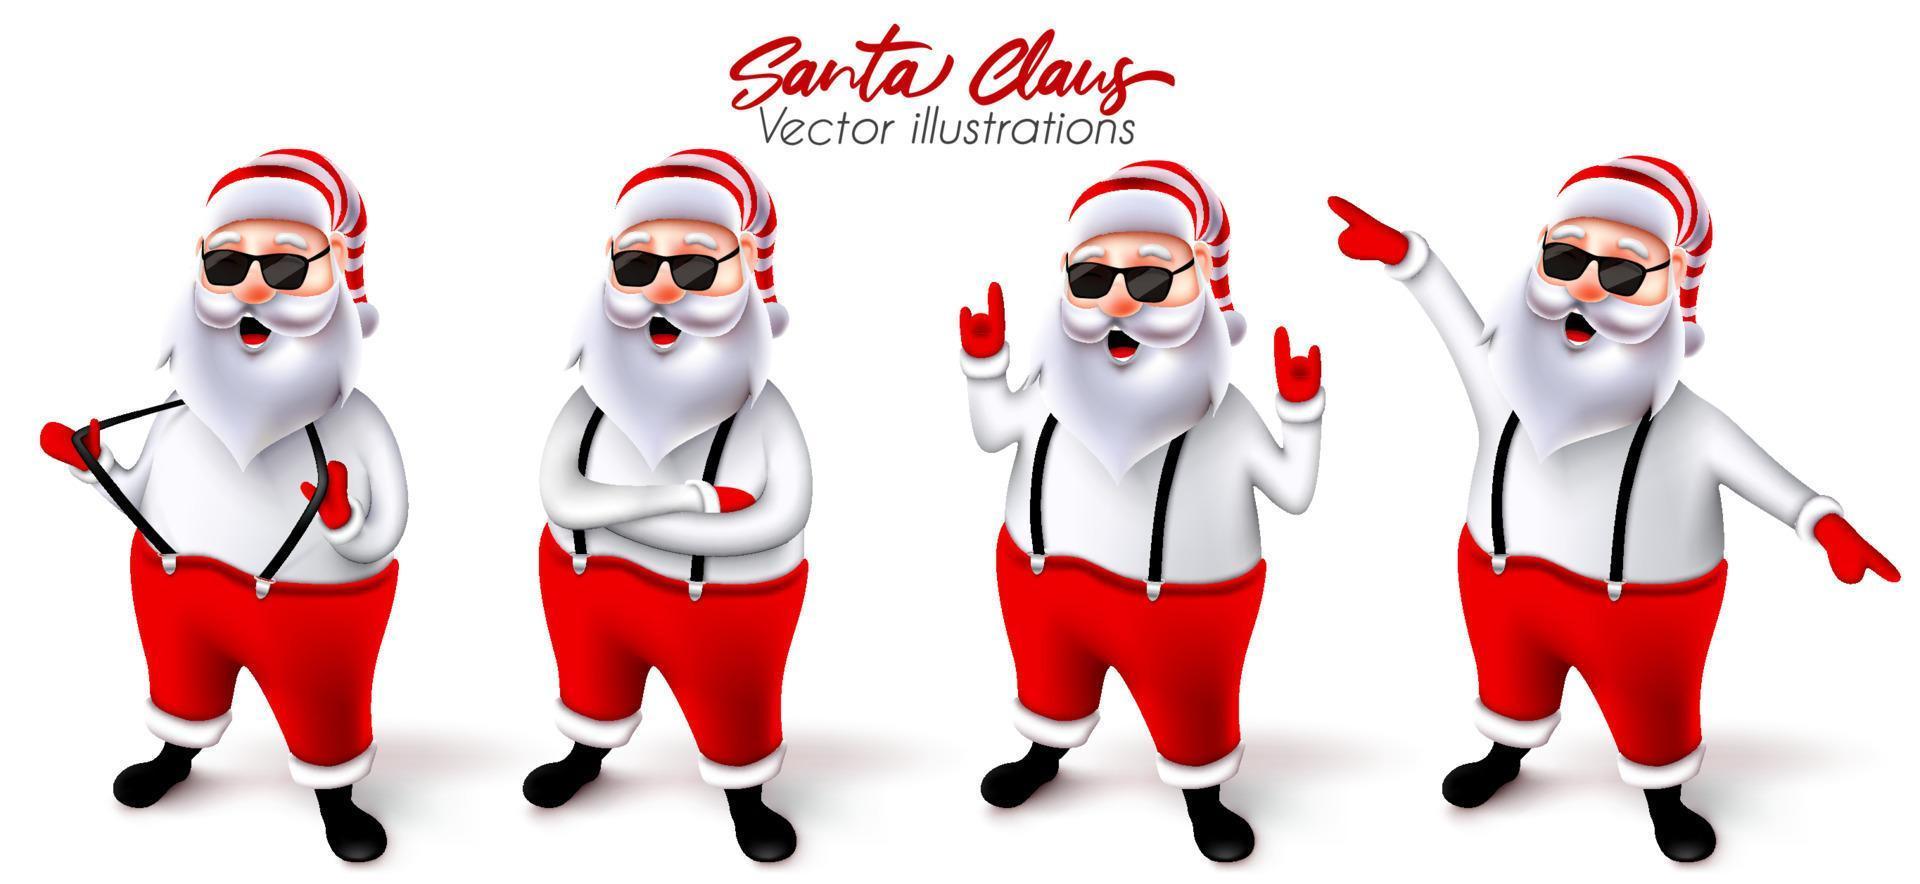 Santa Claus jul karaktär vektoruppsättning. Jultomtens 3d-karaktärer i cool och glad pose med rock n roll och dansgester för söt julkollektionsdesign. vektor illustration.